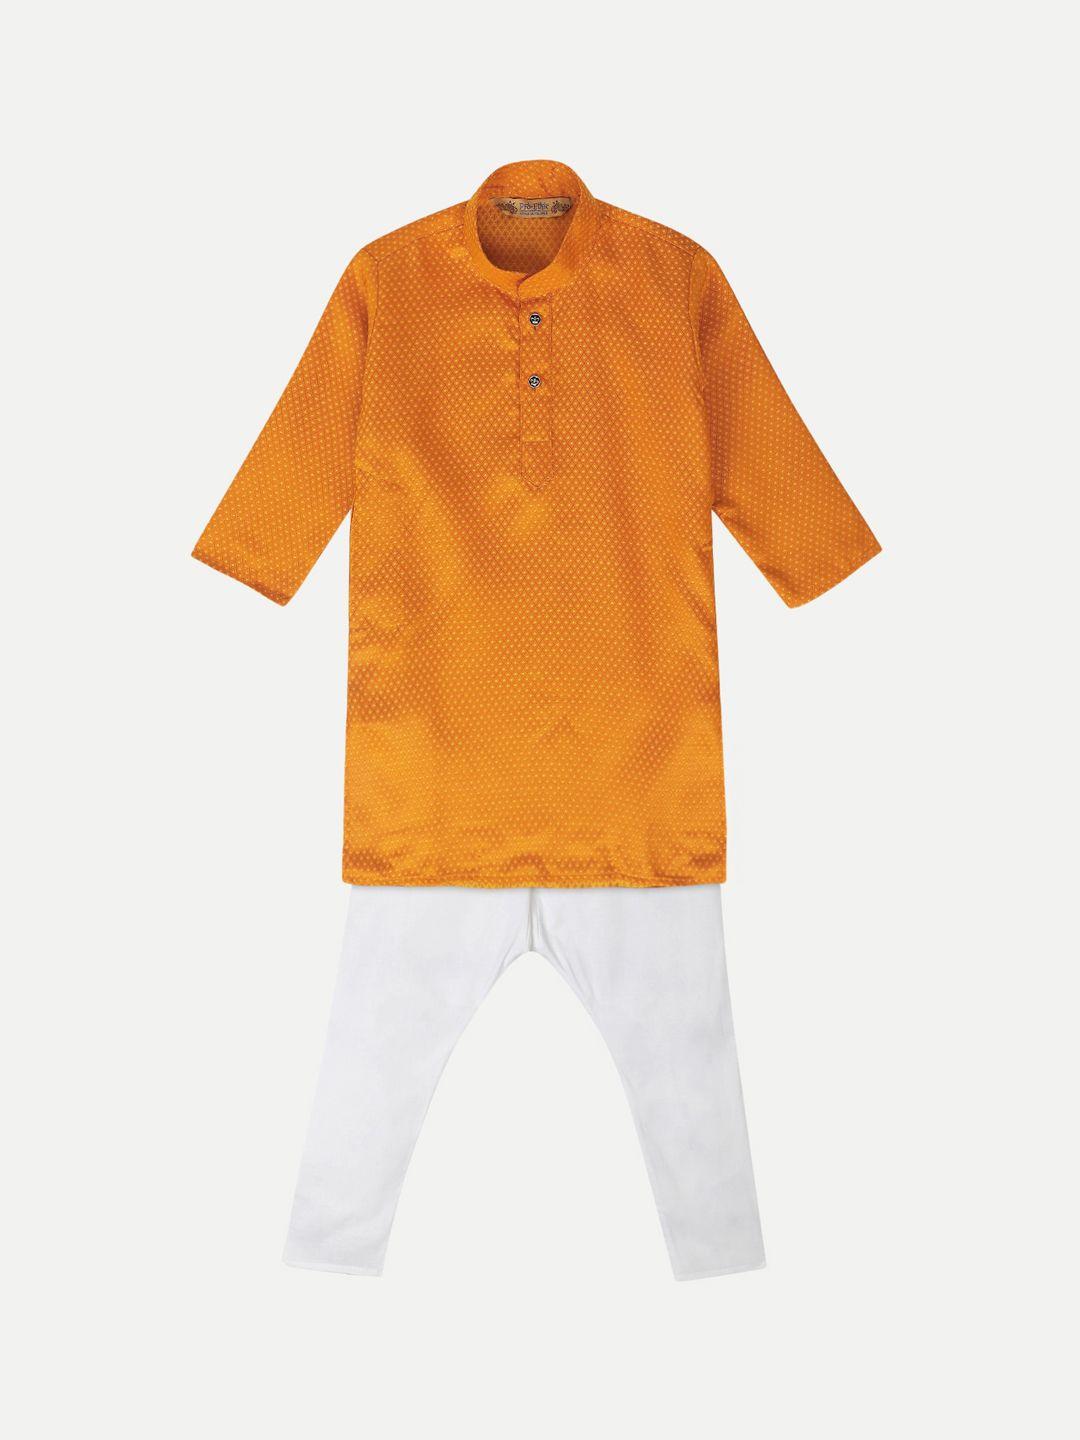 pro-ethic style developer boys orange regular kurta with pyjamas